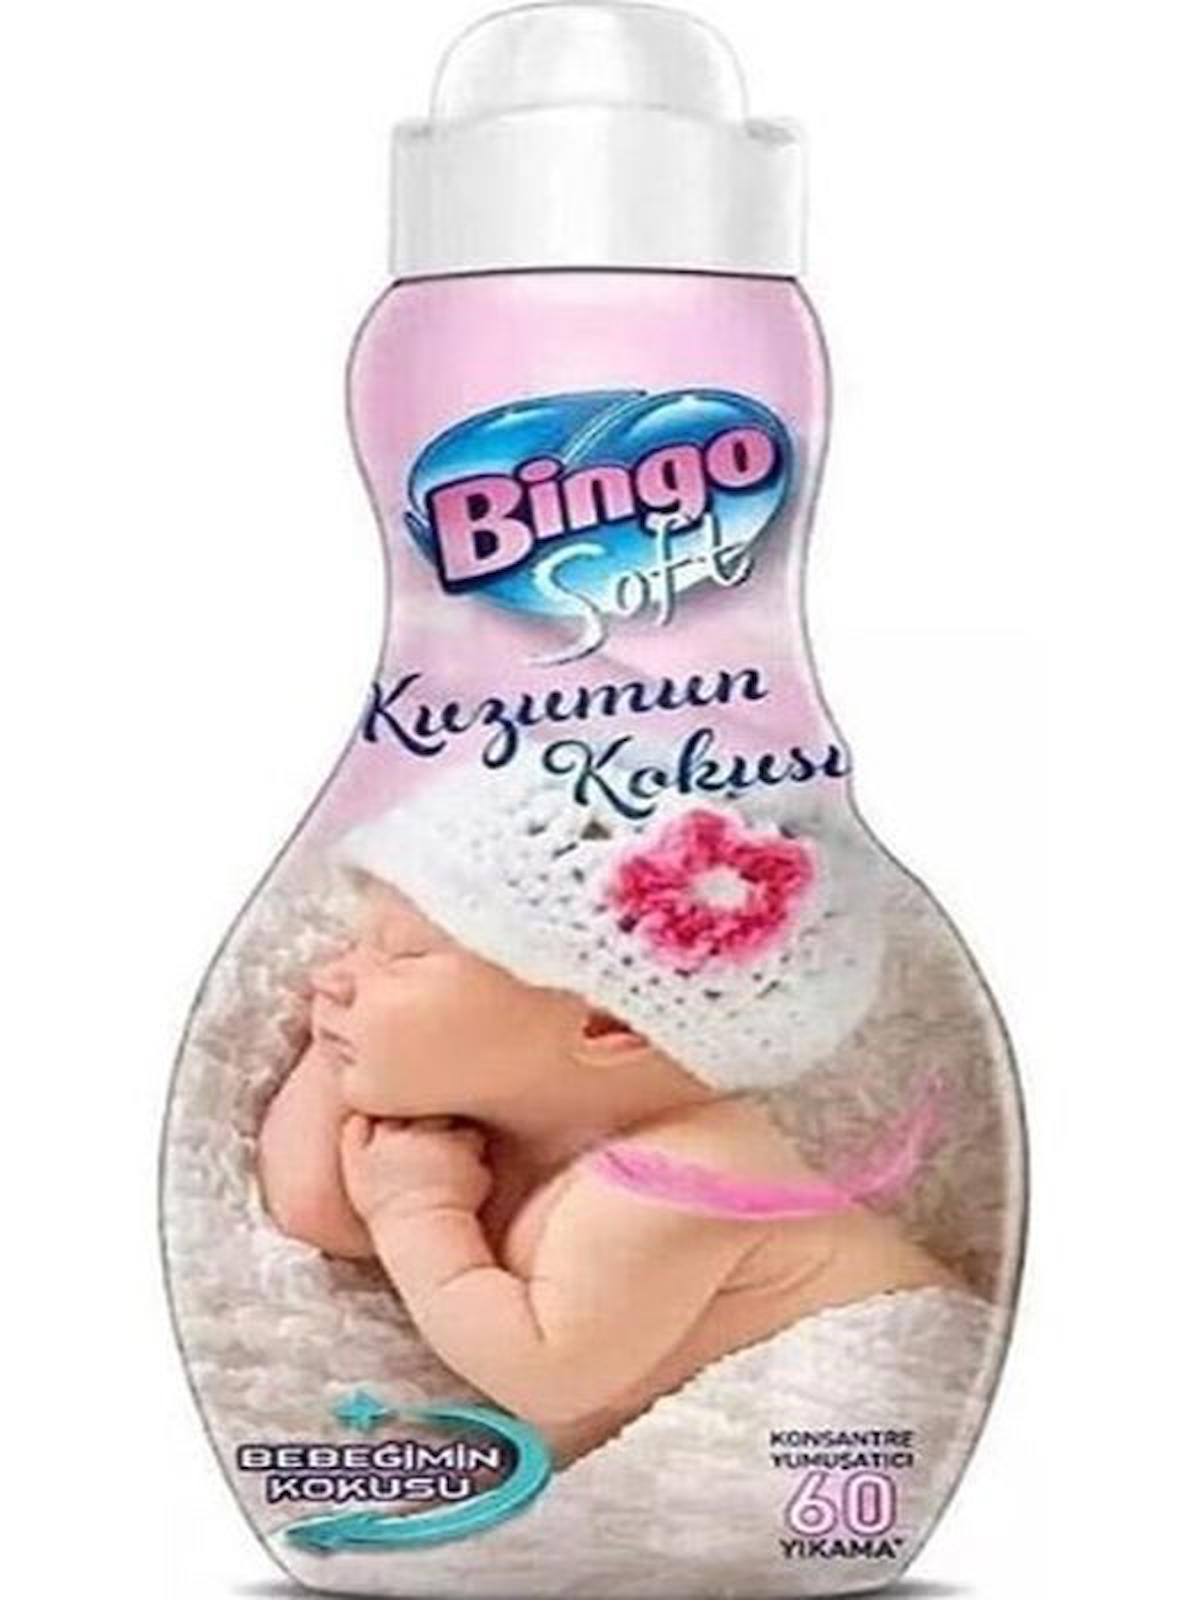 Bingo Soft Kuzumun Kokusu Konsantre 60 Yıkama Yumuşatıcı 1.44 lt